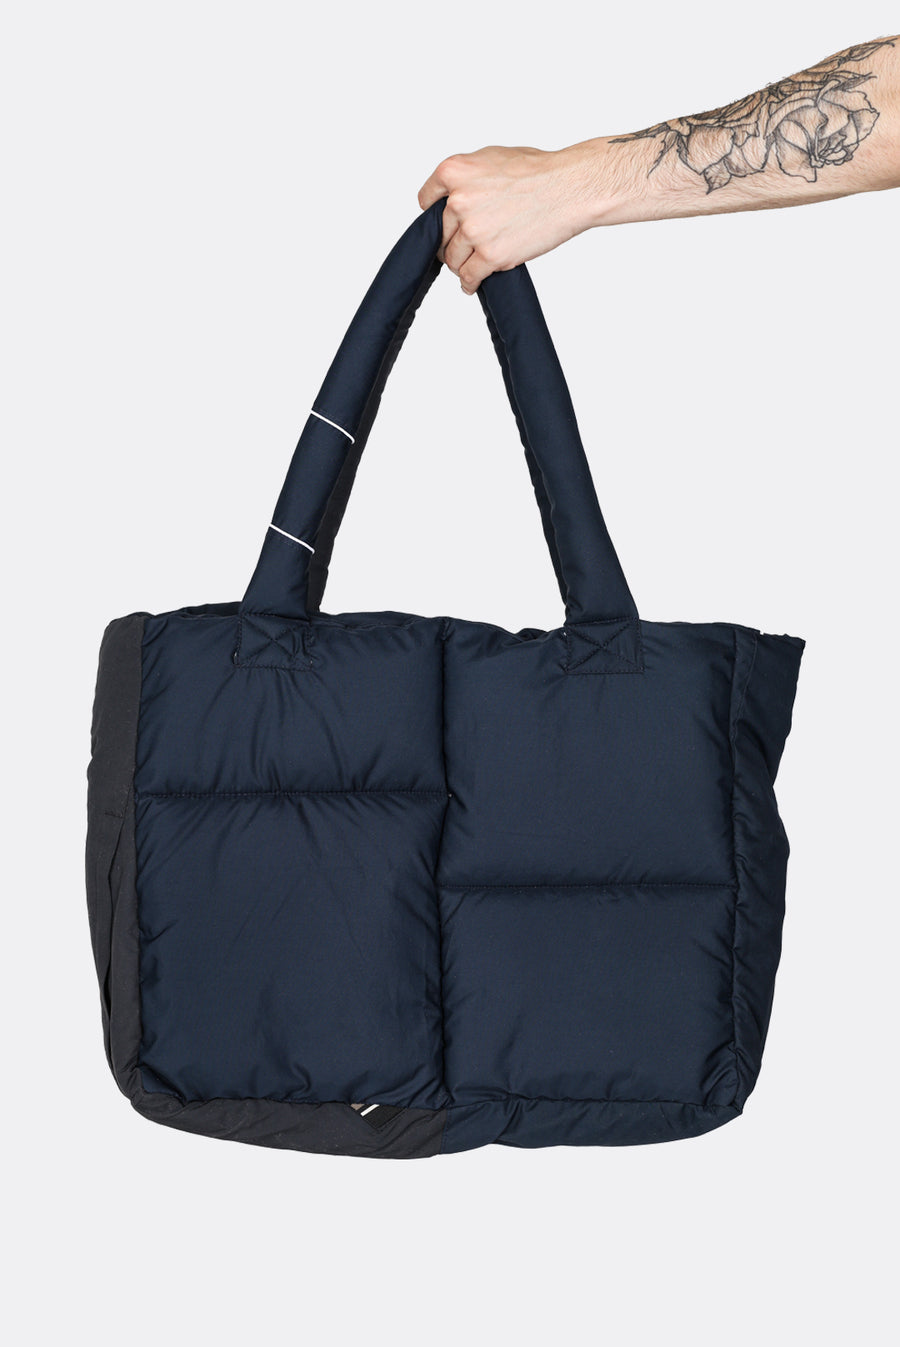 Rework Nike Puffer Tote Bag